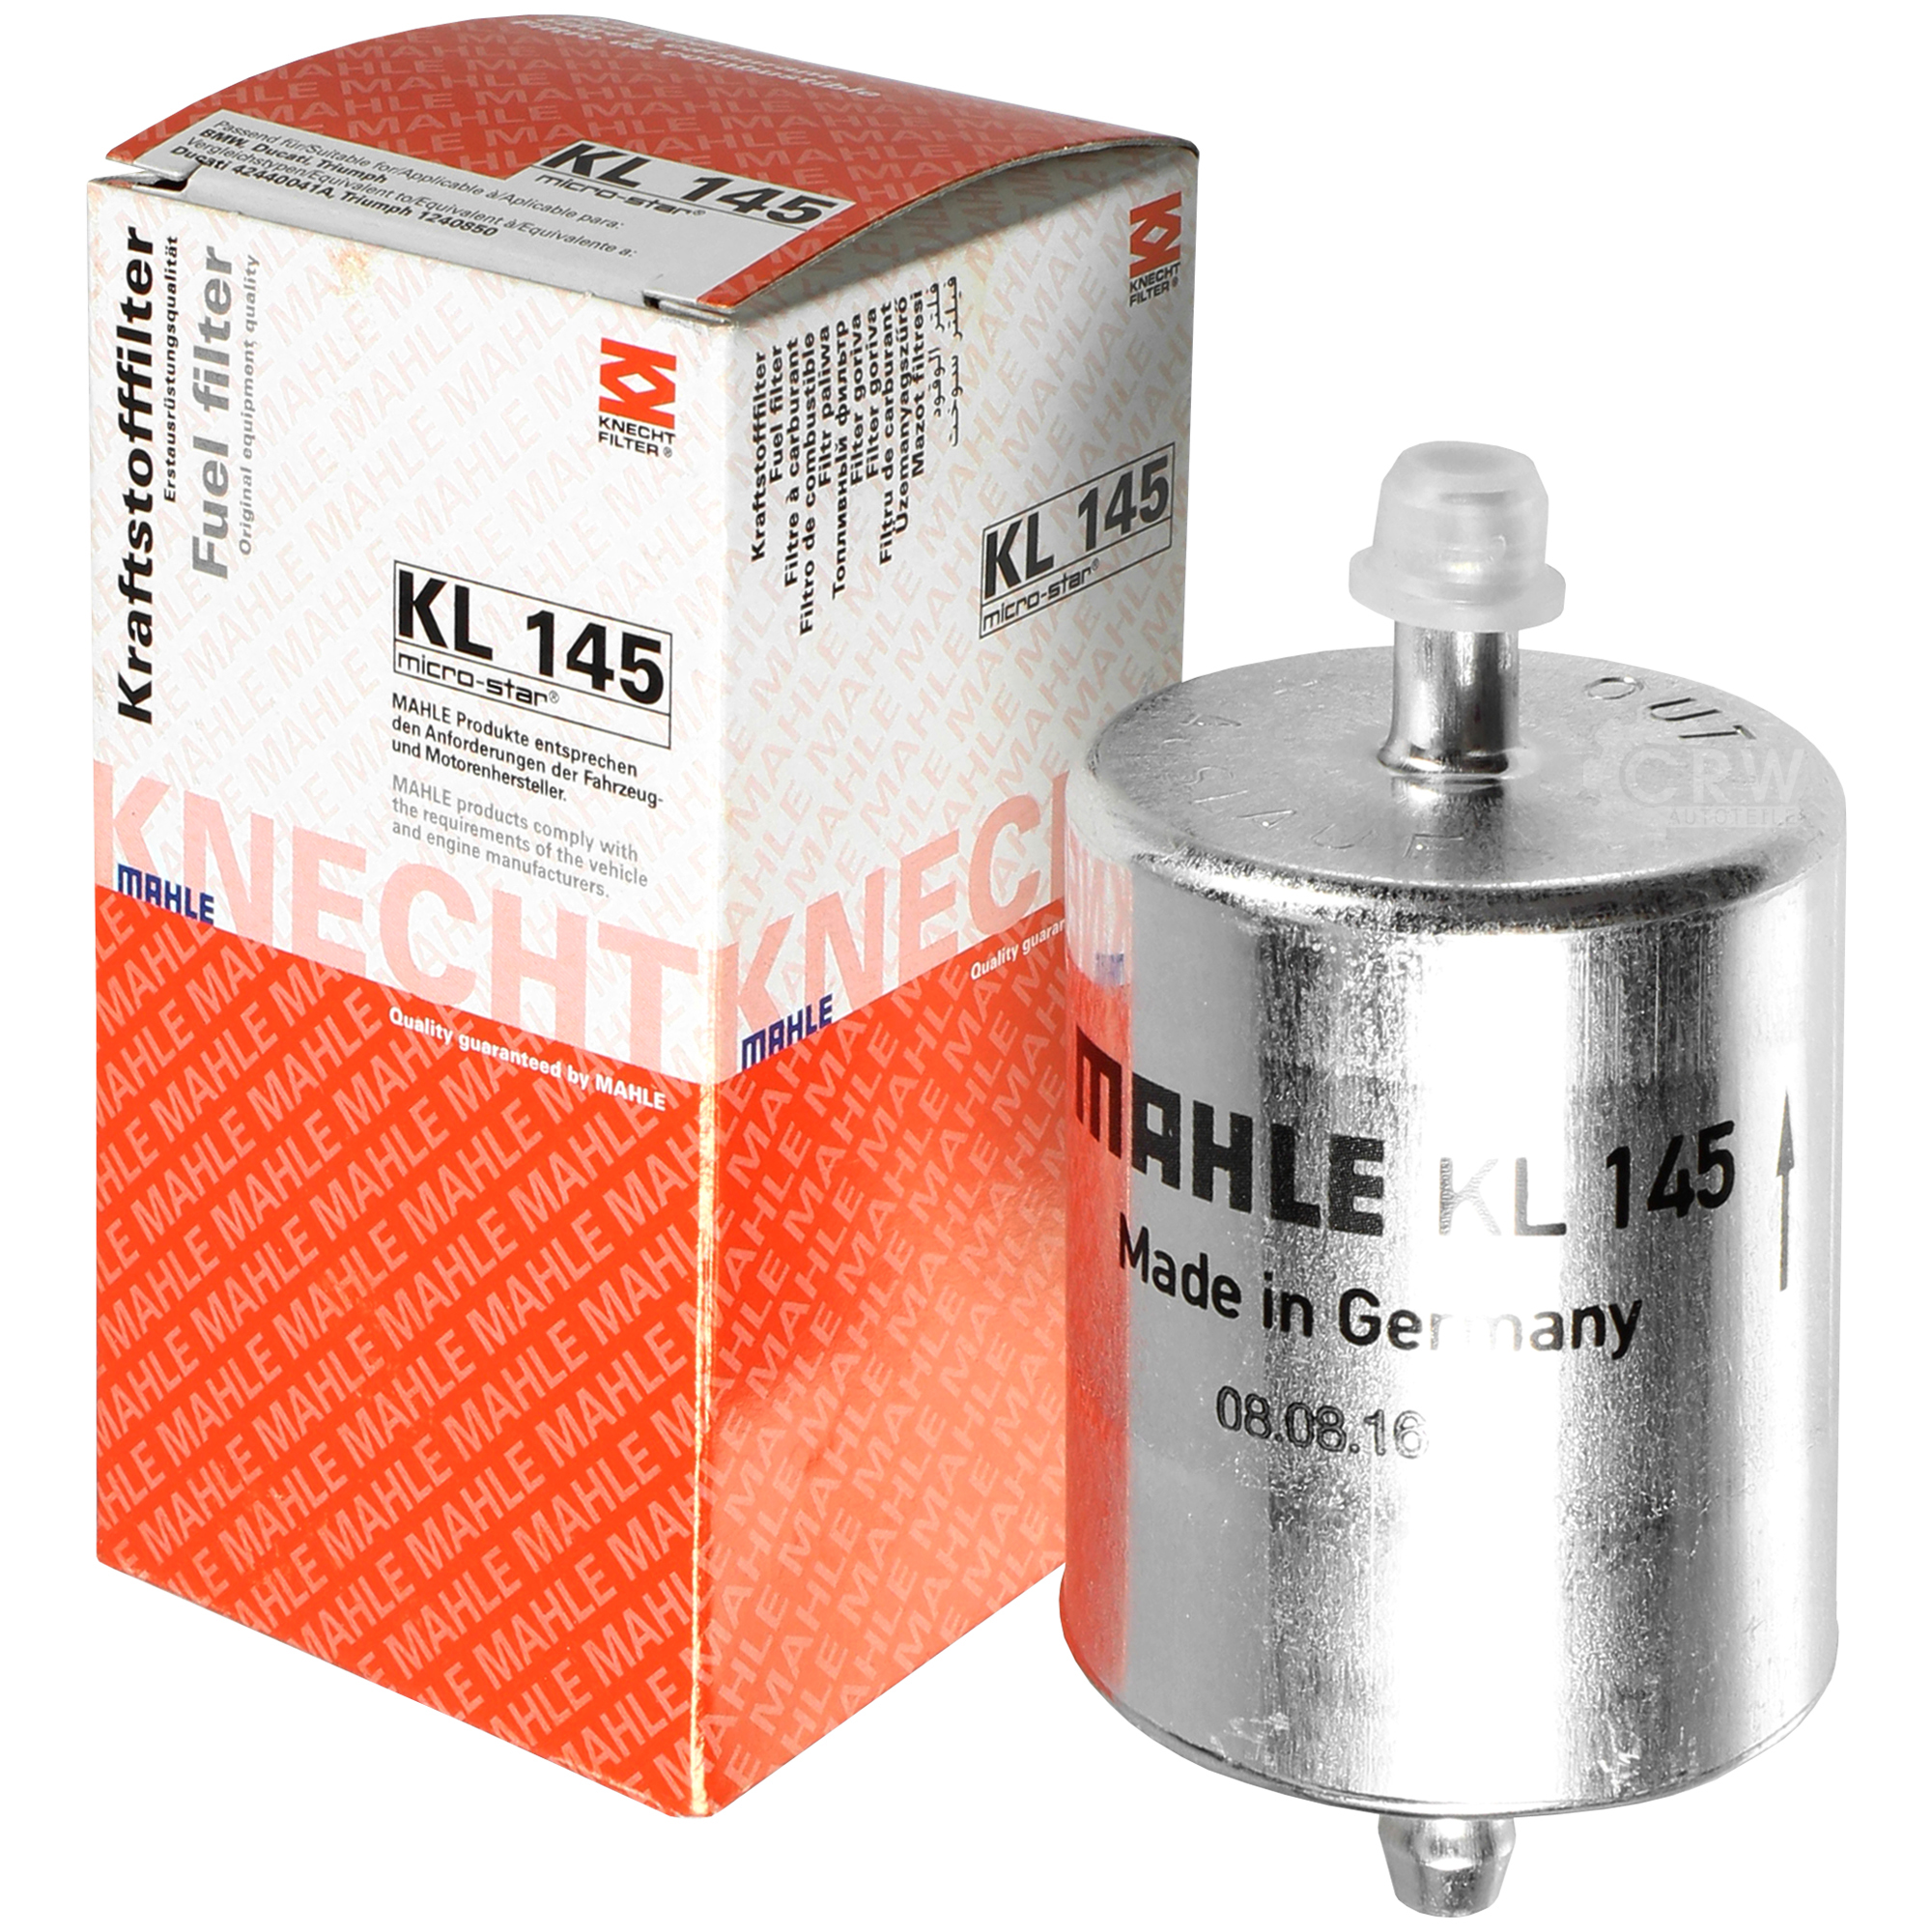 MAHLE Kraftstofffilter KL 145